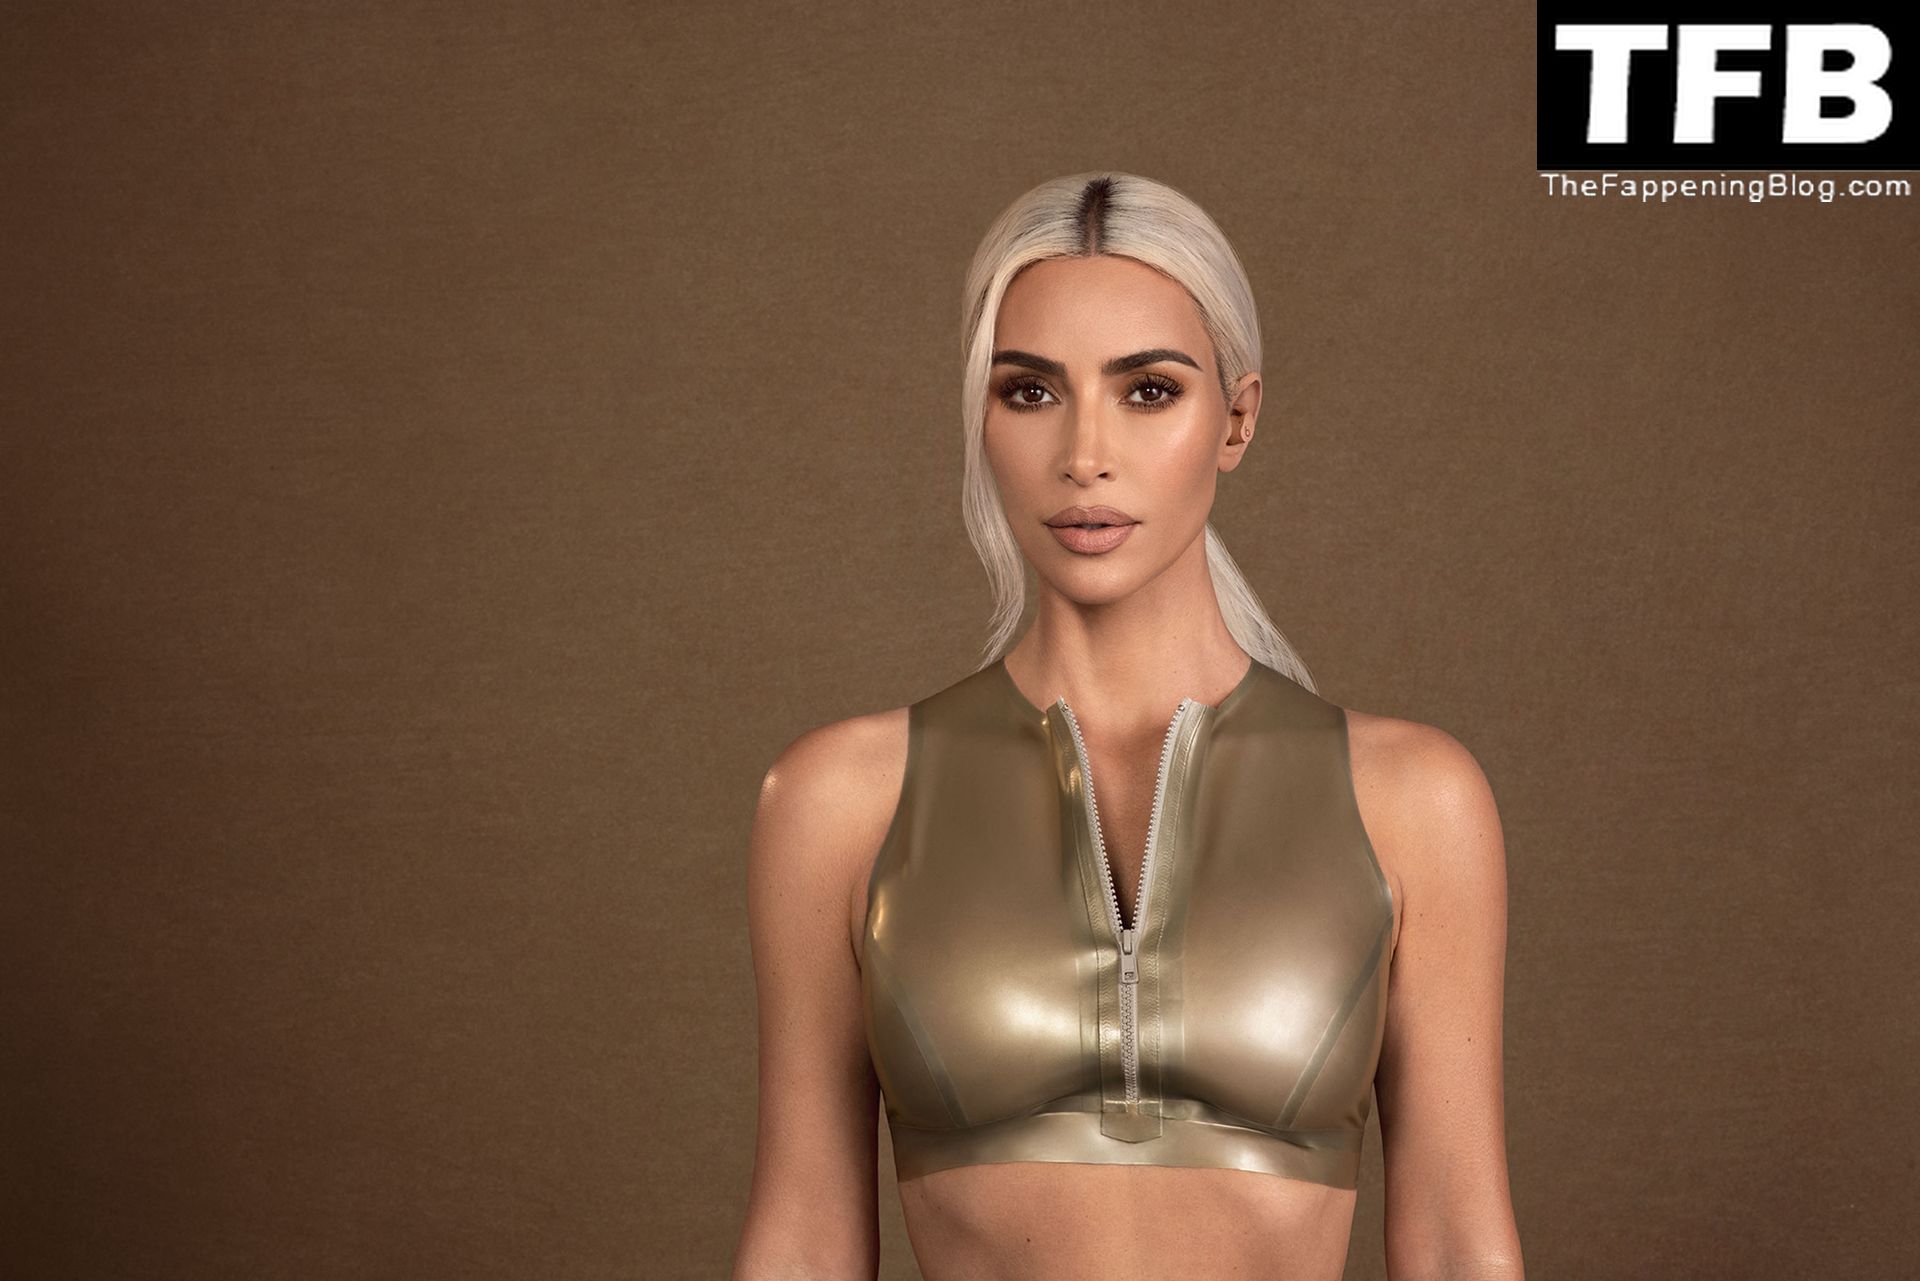 Kim-Kardashian-Sexy-The-Fappening-Blog-3.jpg